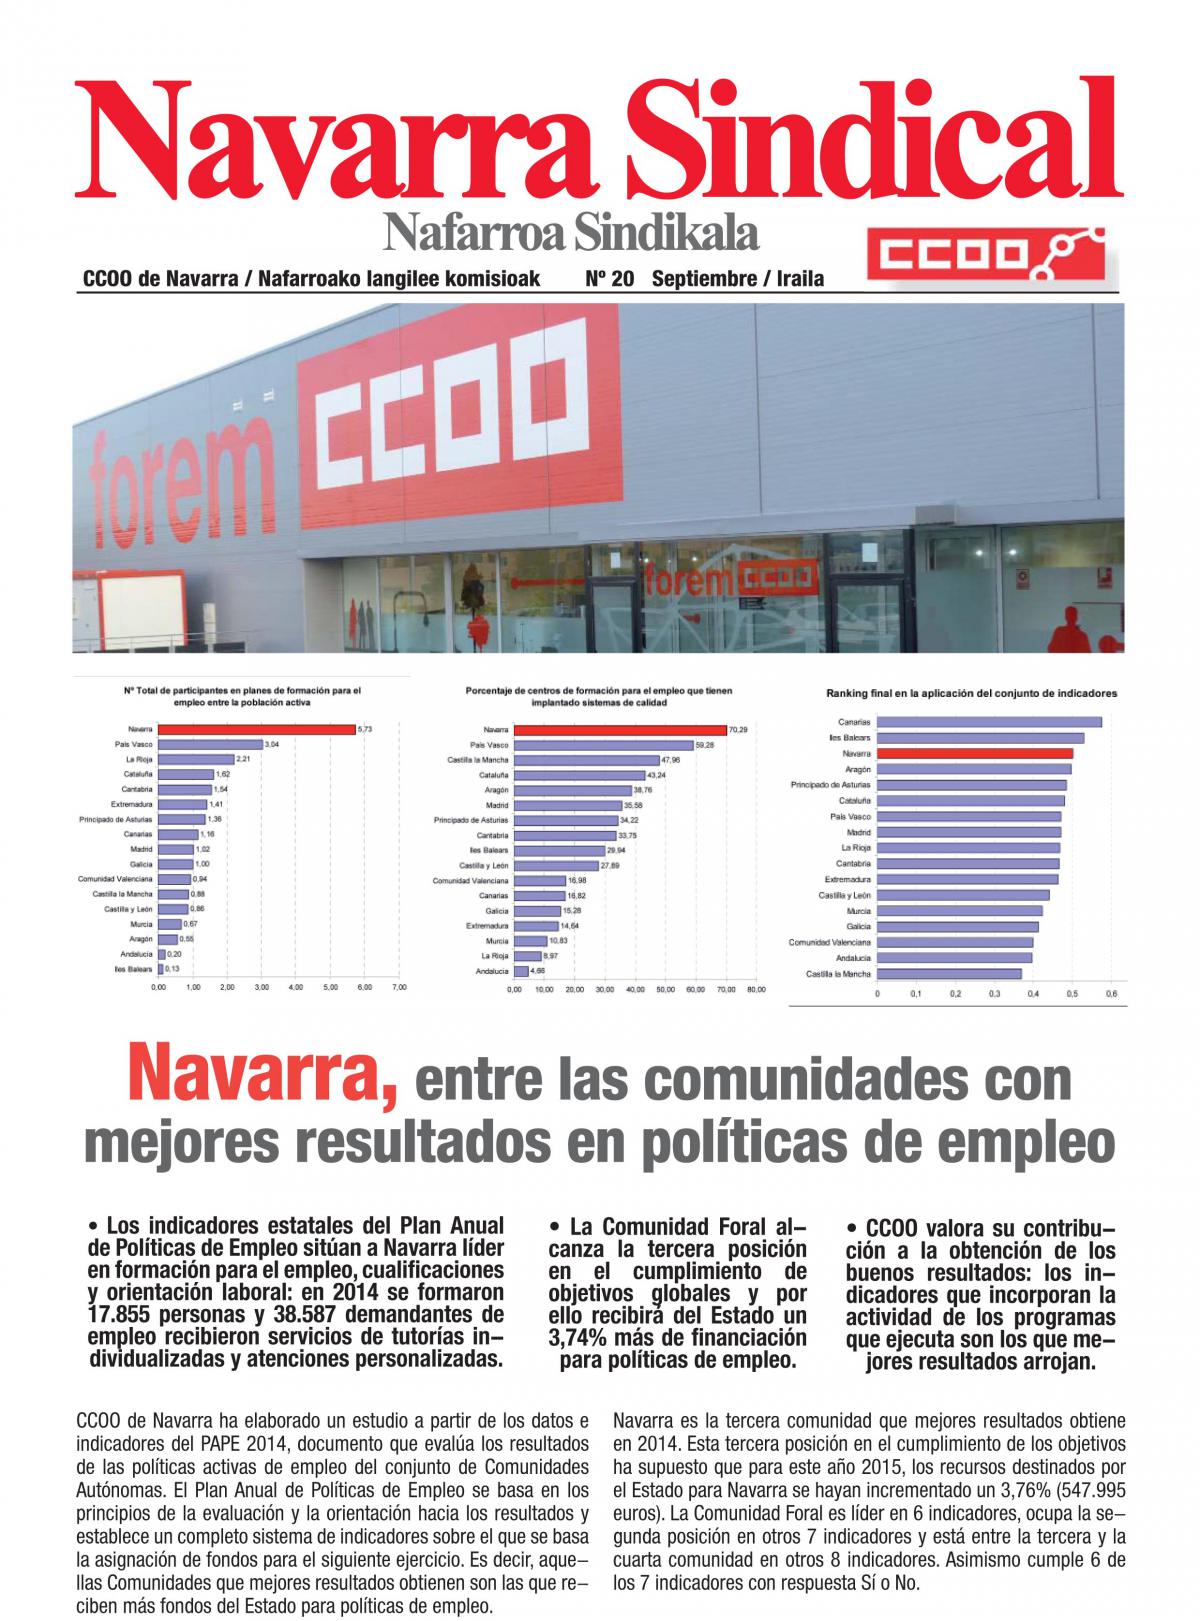 Navarra, entre las comunidades con mejores resultados en polticas de empleo